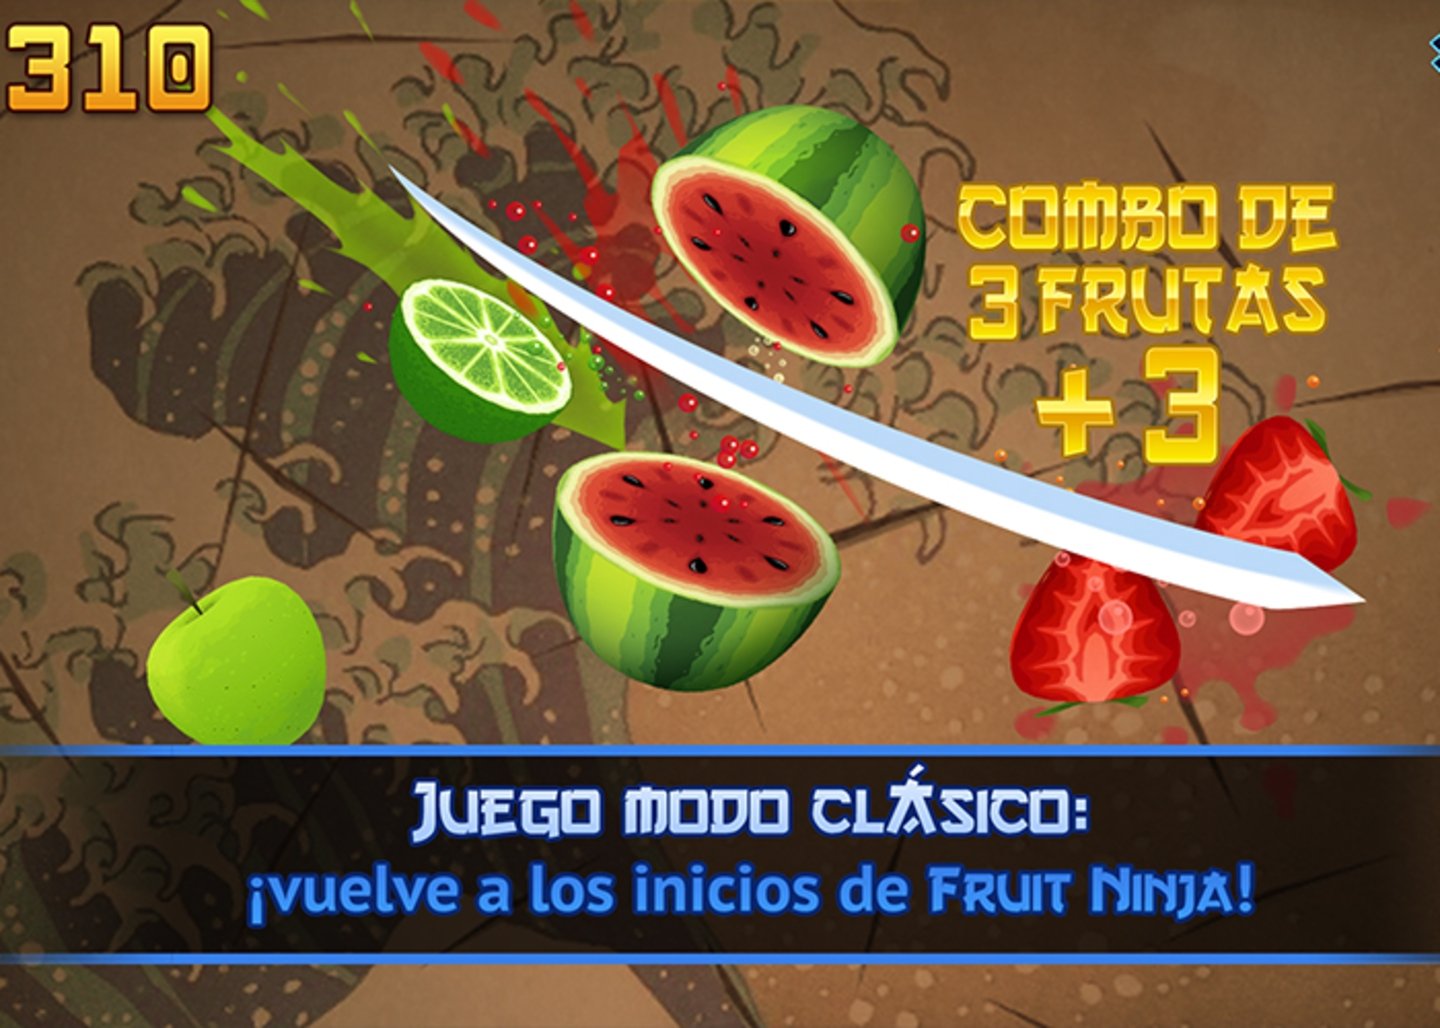 Preparate para cortar y rebanar frutas con estilo en Fruit Ninja Classic.